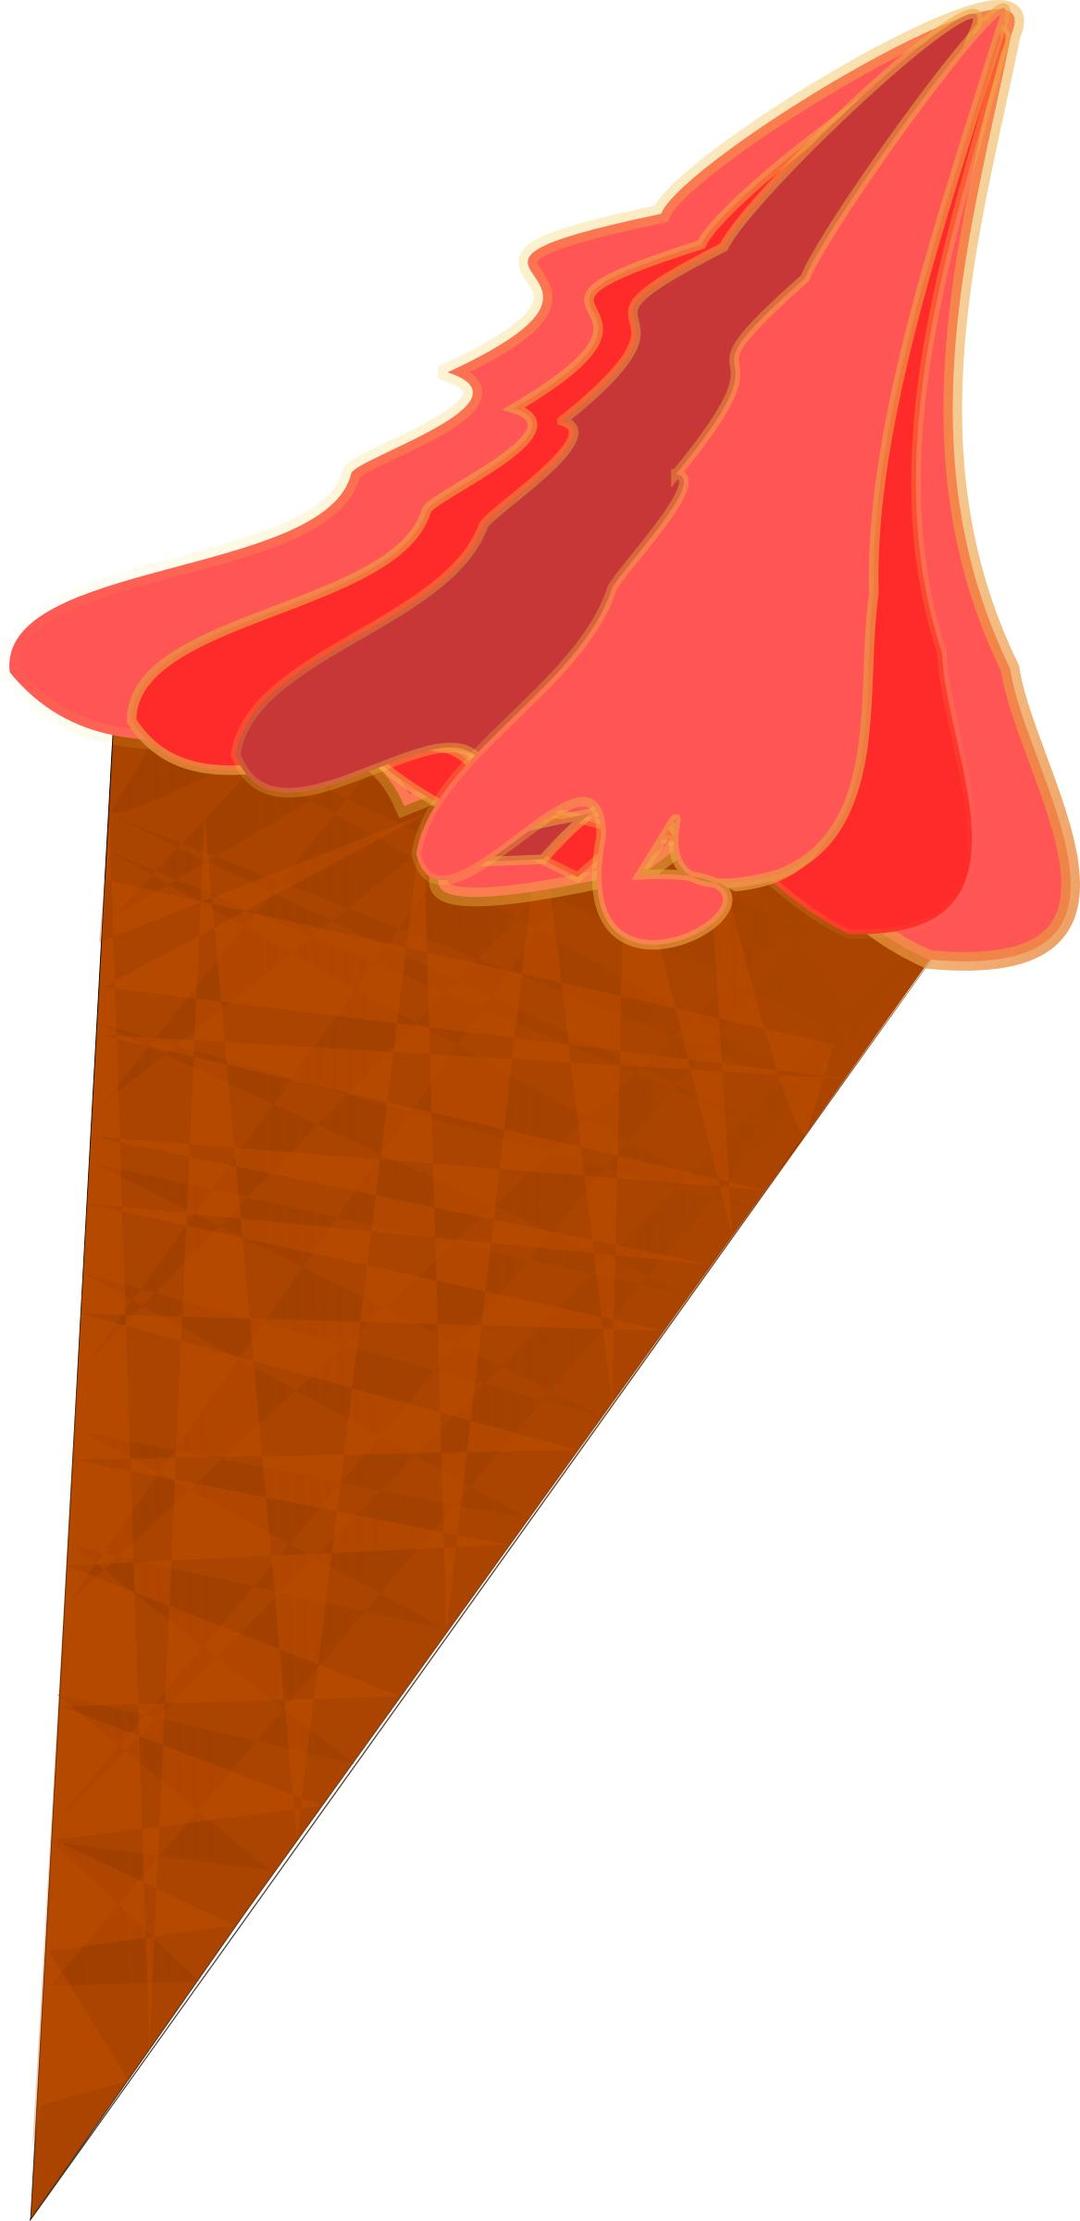 Wild-Berry Ice Cream Cone png transparent